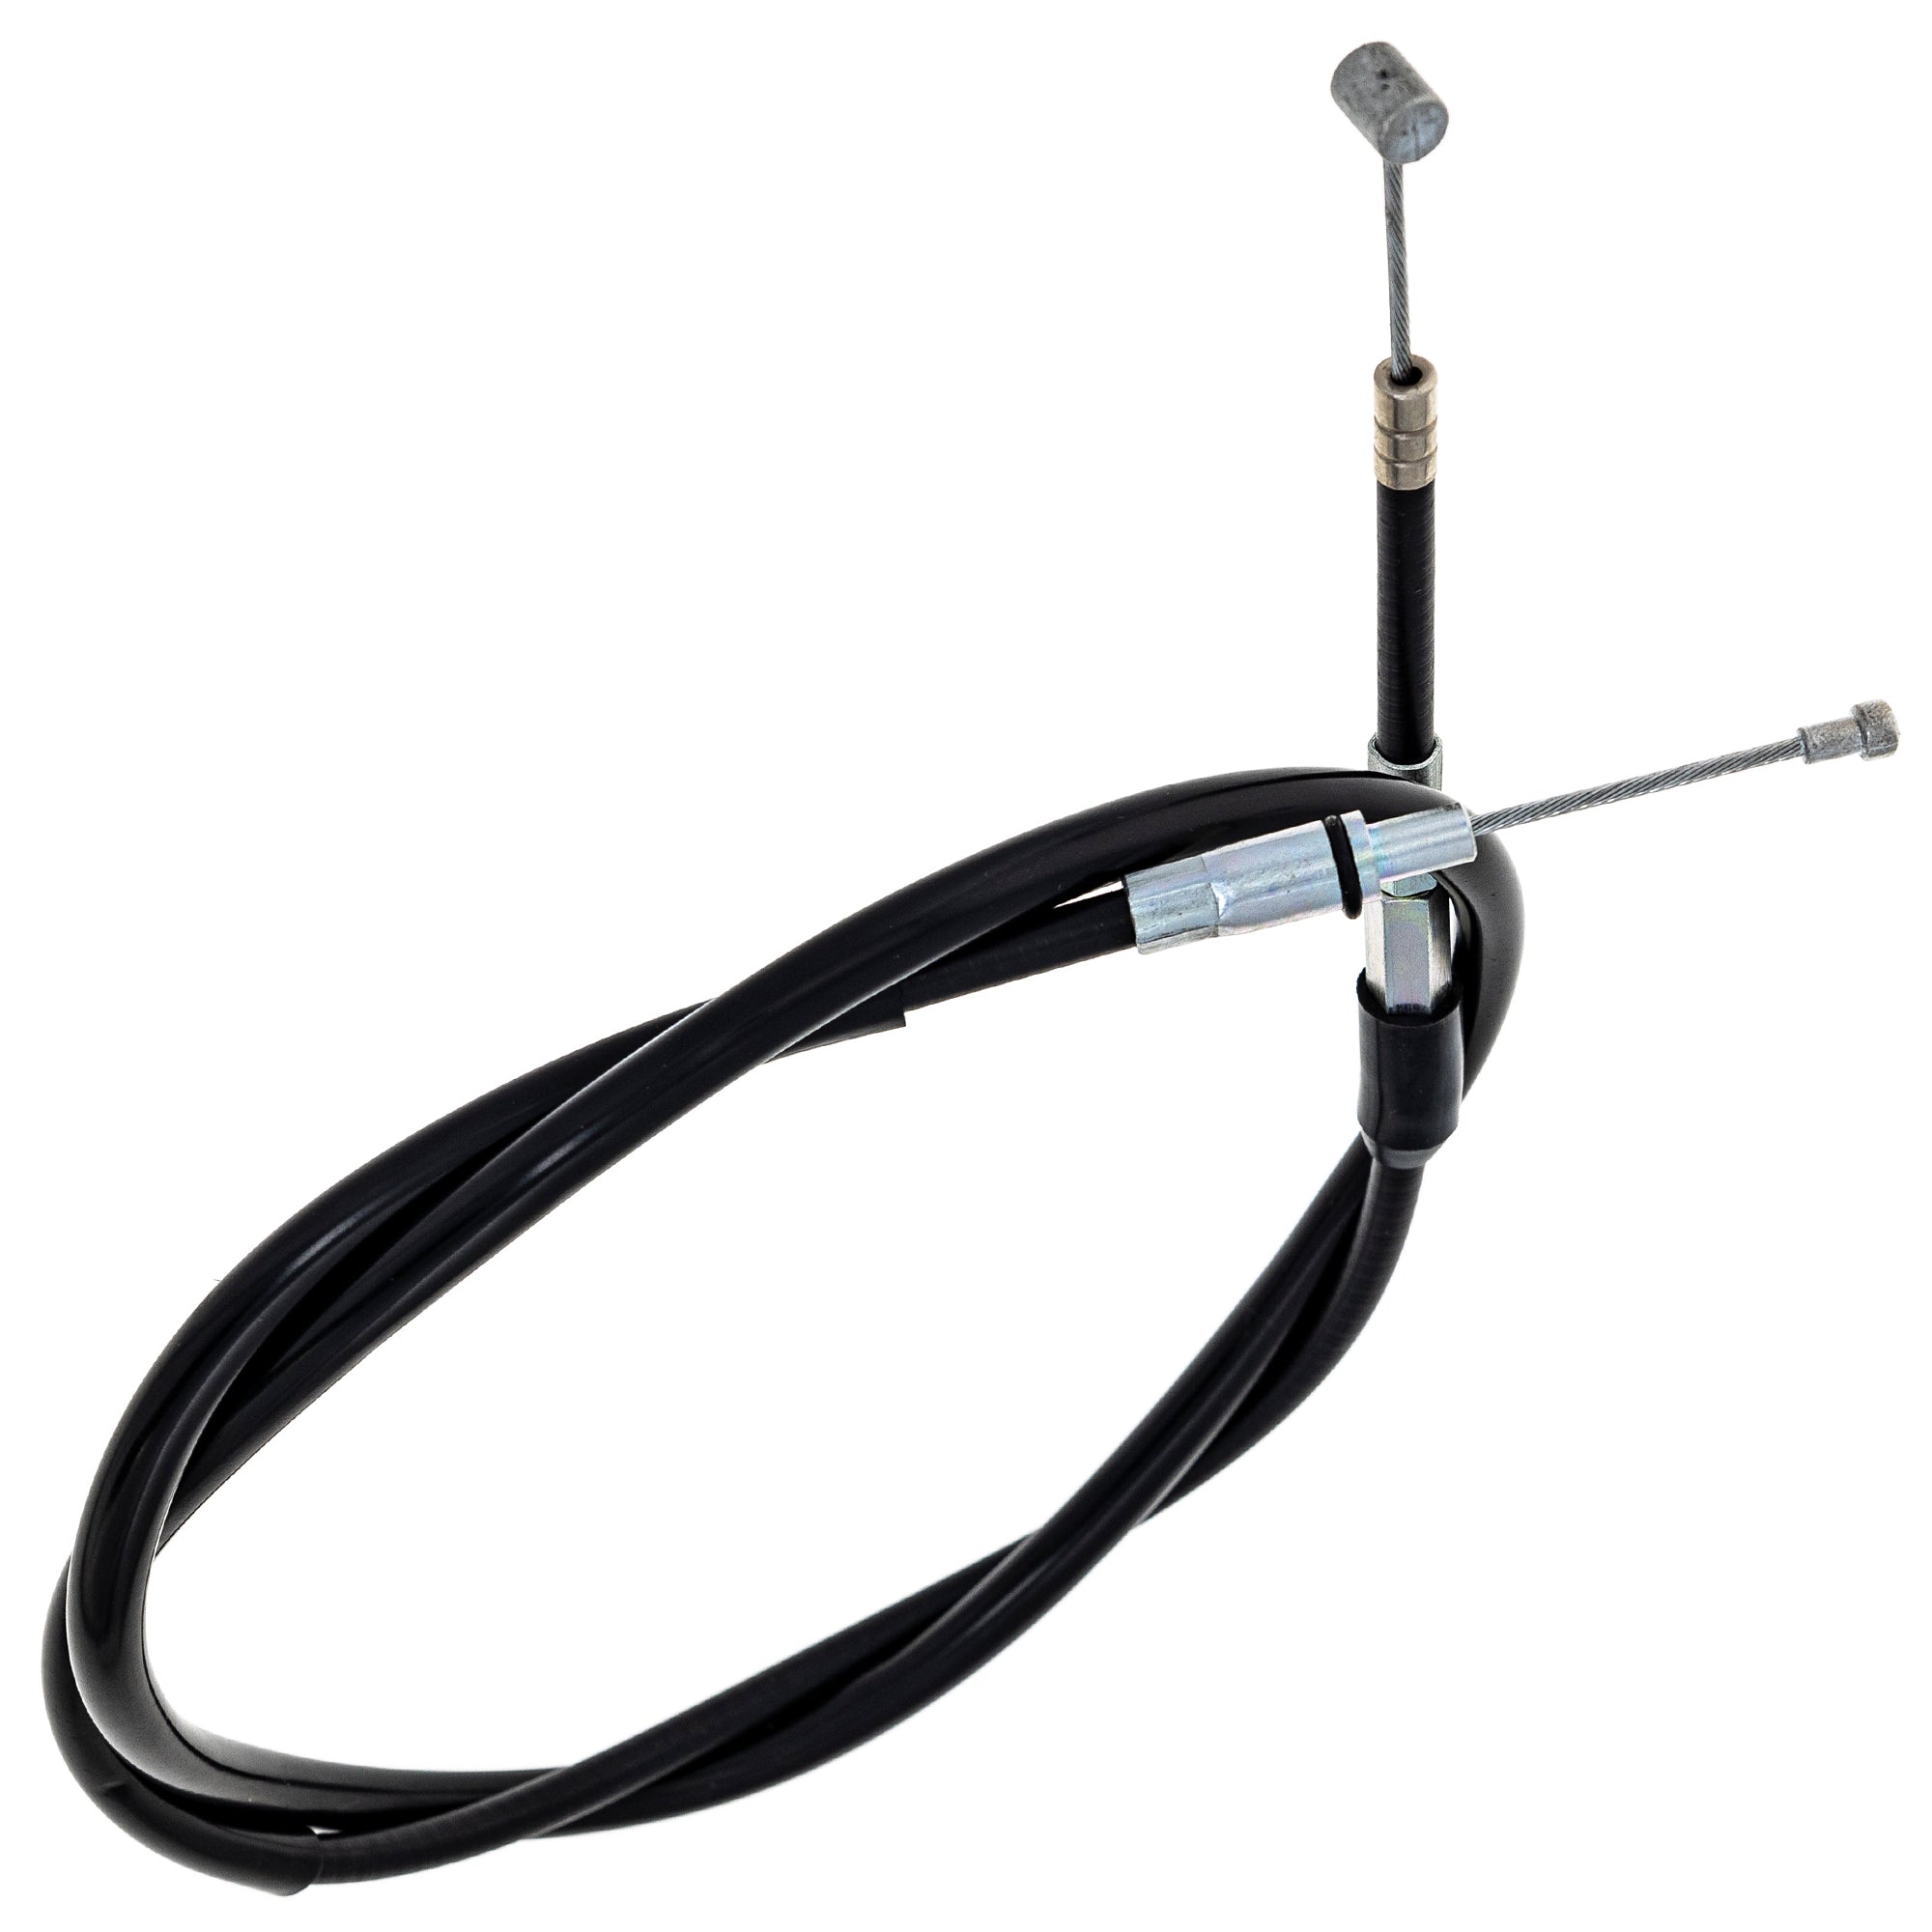 Clutch Cable For Honda 22870-KZ4-P00 22870-KZ4-890 22870-KZ4-730 22870-KS6-700